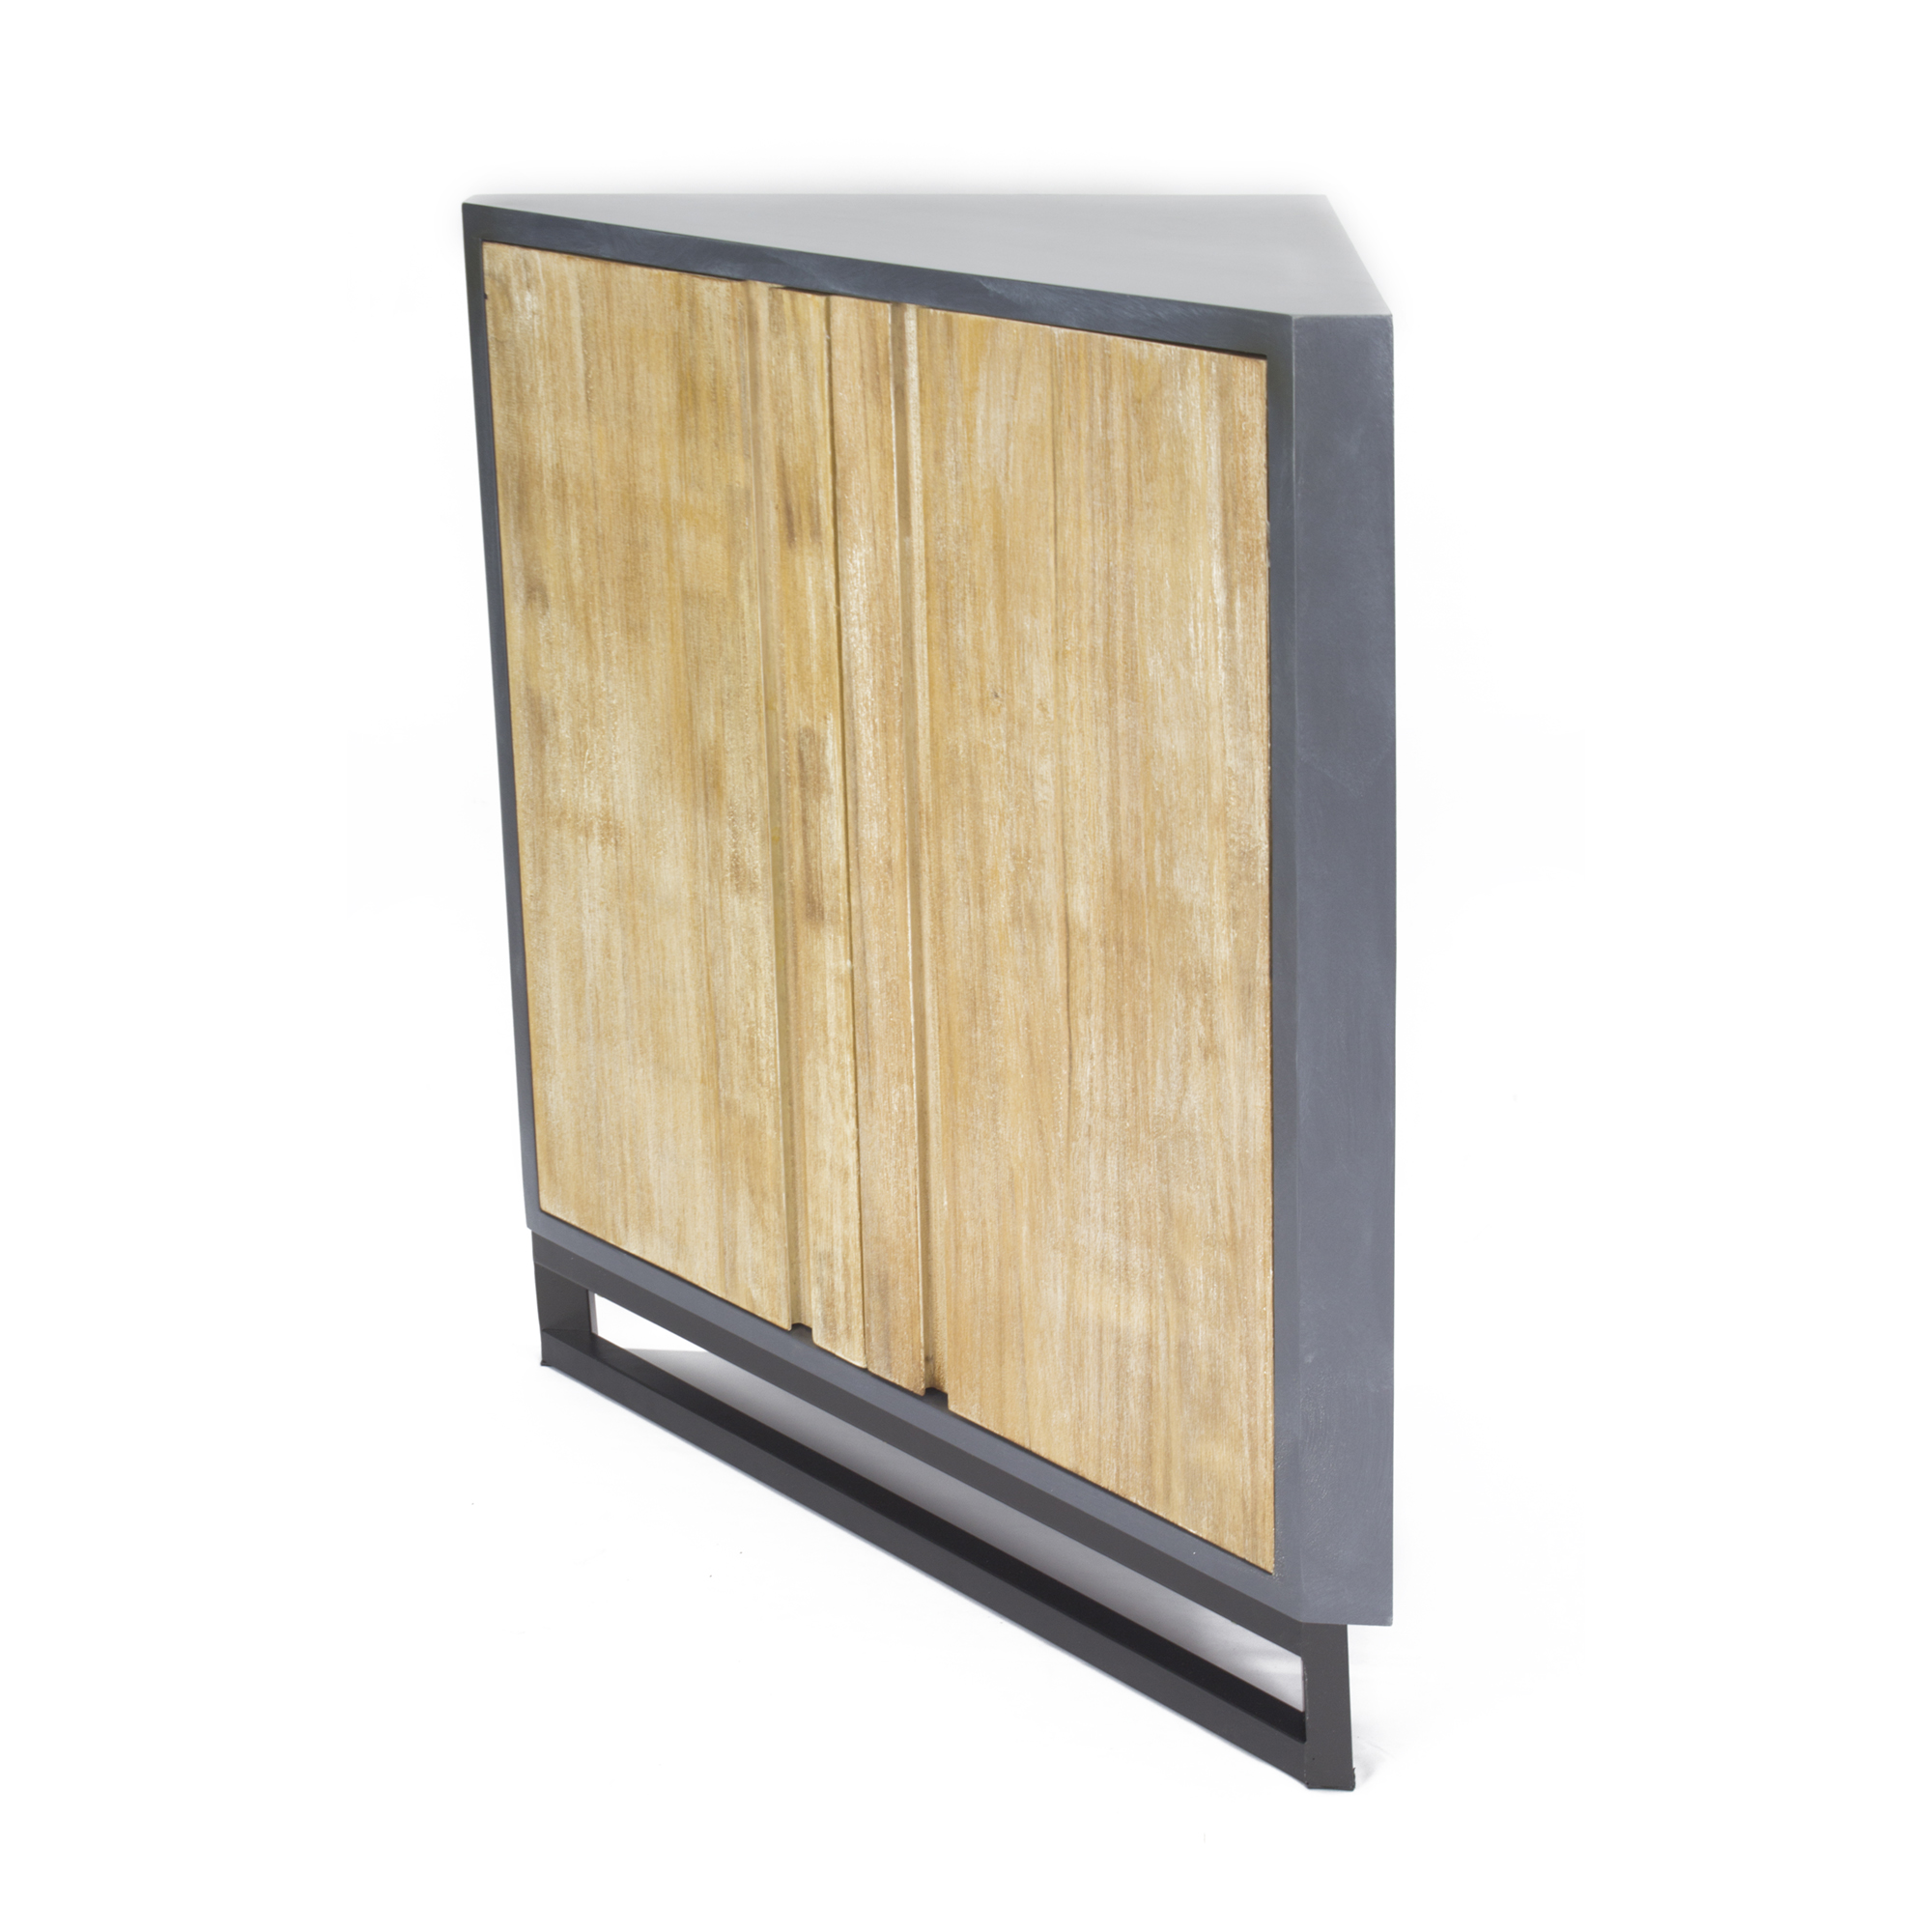 Red MDF Wood Metal Corner Cabinet with Doors